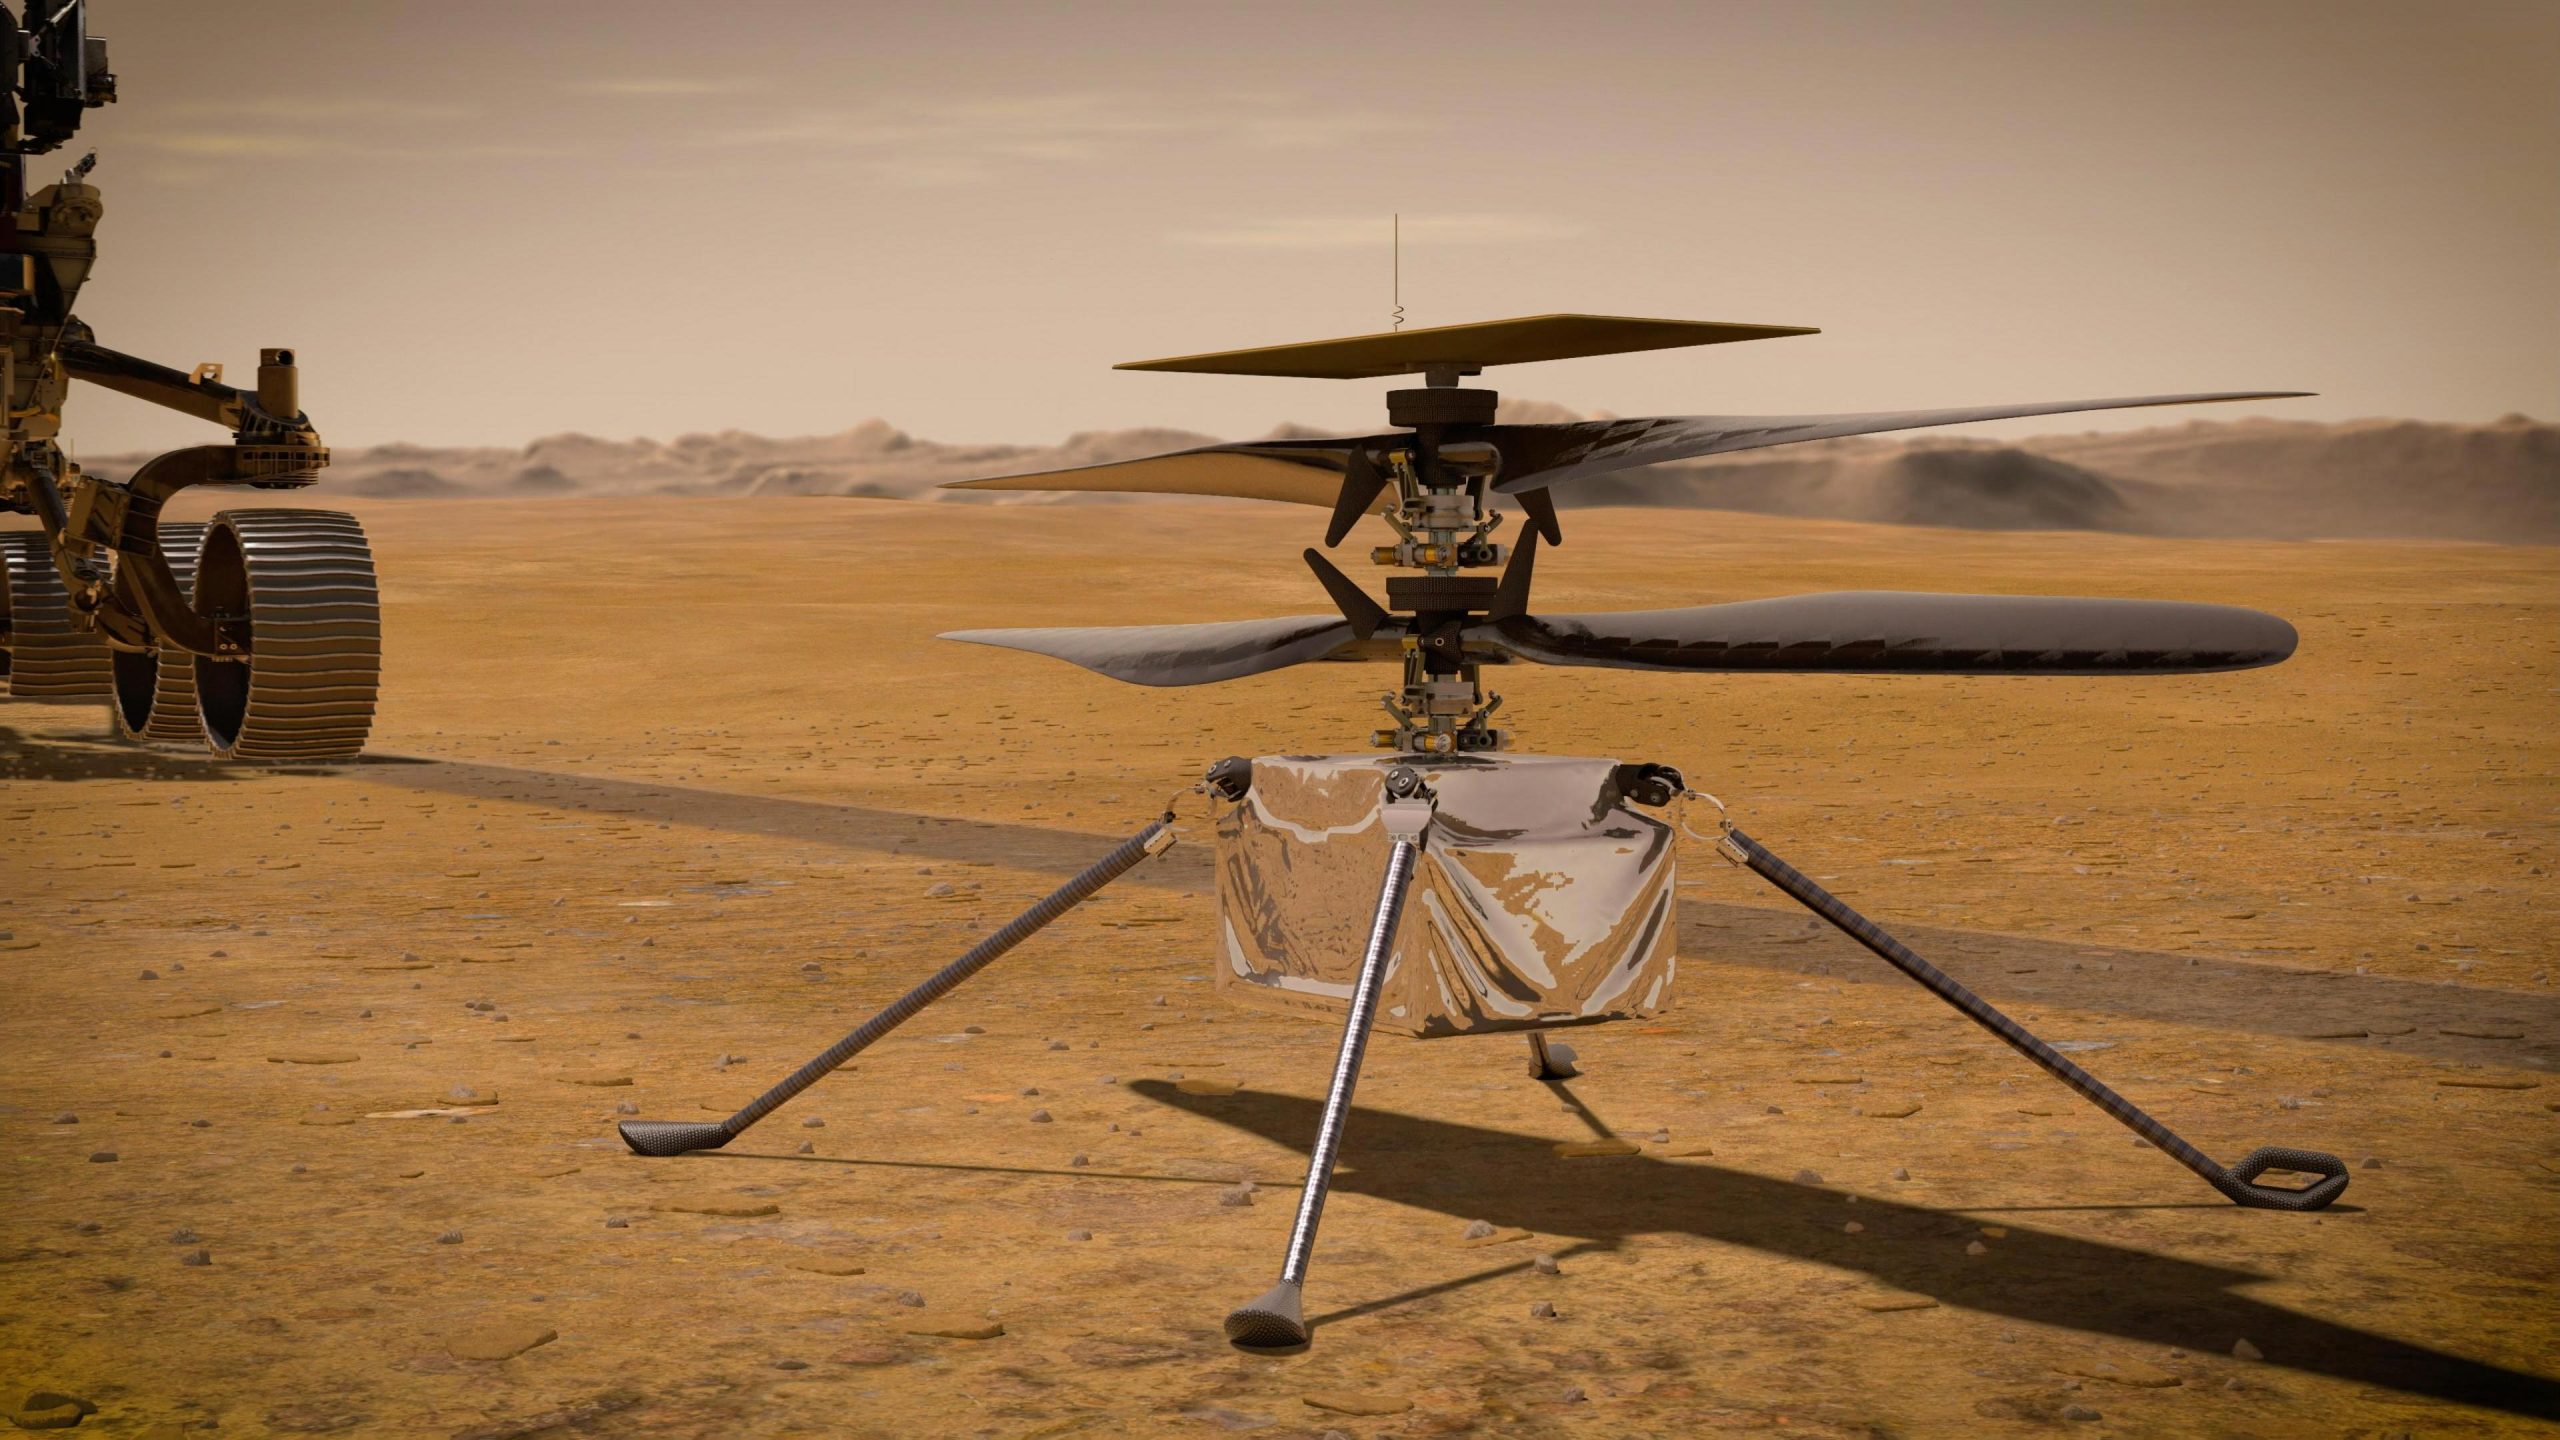 L'ingéniosité a effectué son premier vol complet dans l'atmosphère de Mars après une longue pause